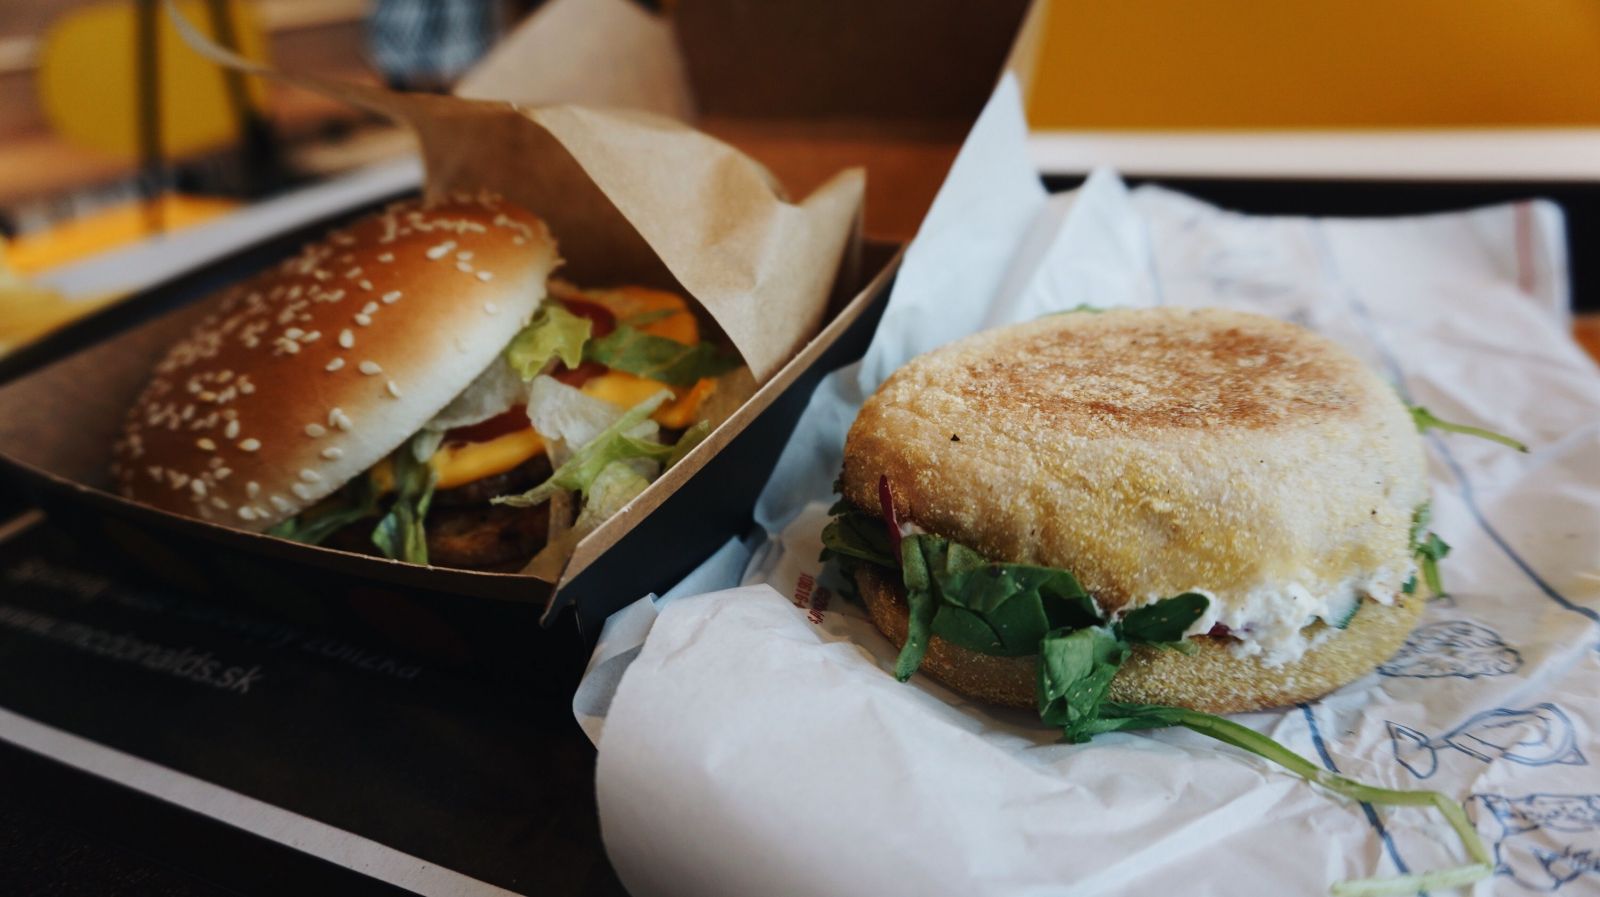 Lučina x McDonald ': Ako chutí tradičné slovenské burger s bryndzou a reďkovkou v Mekáč?  (Test)